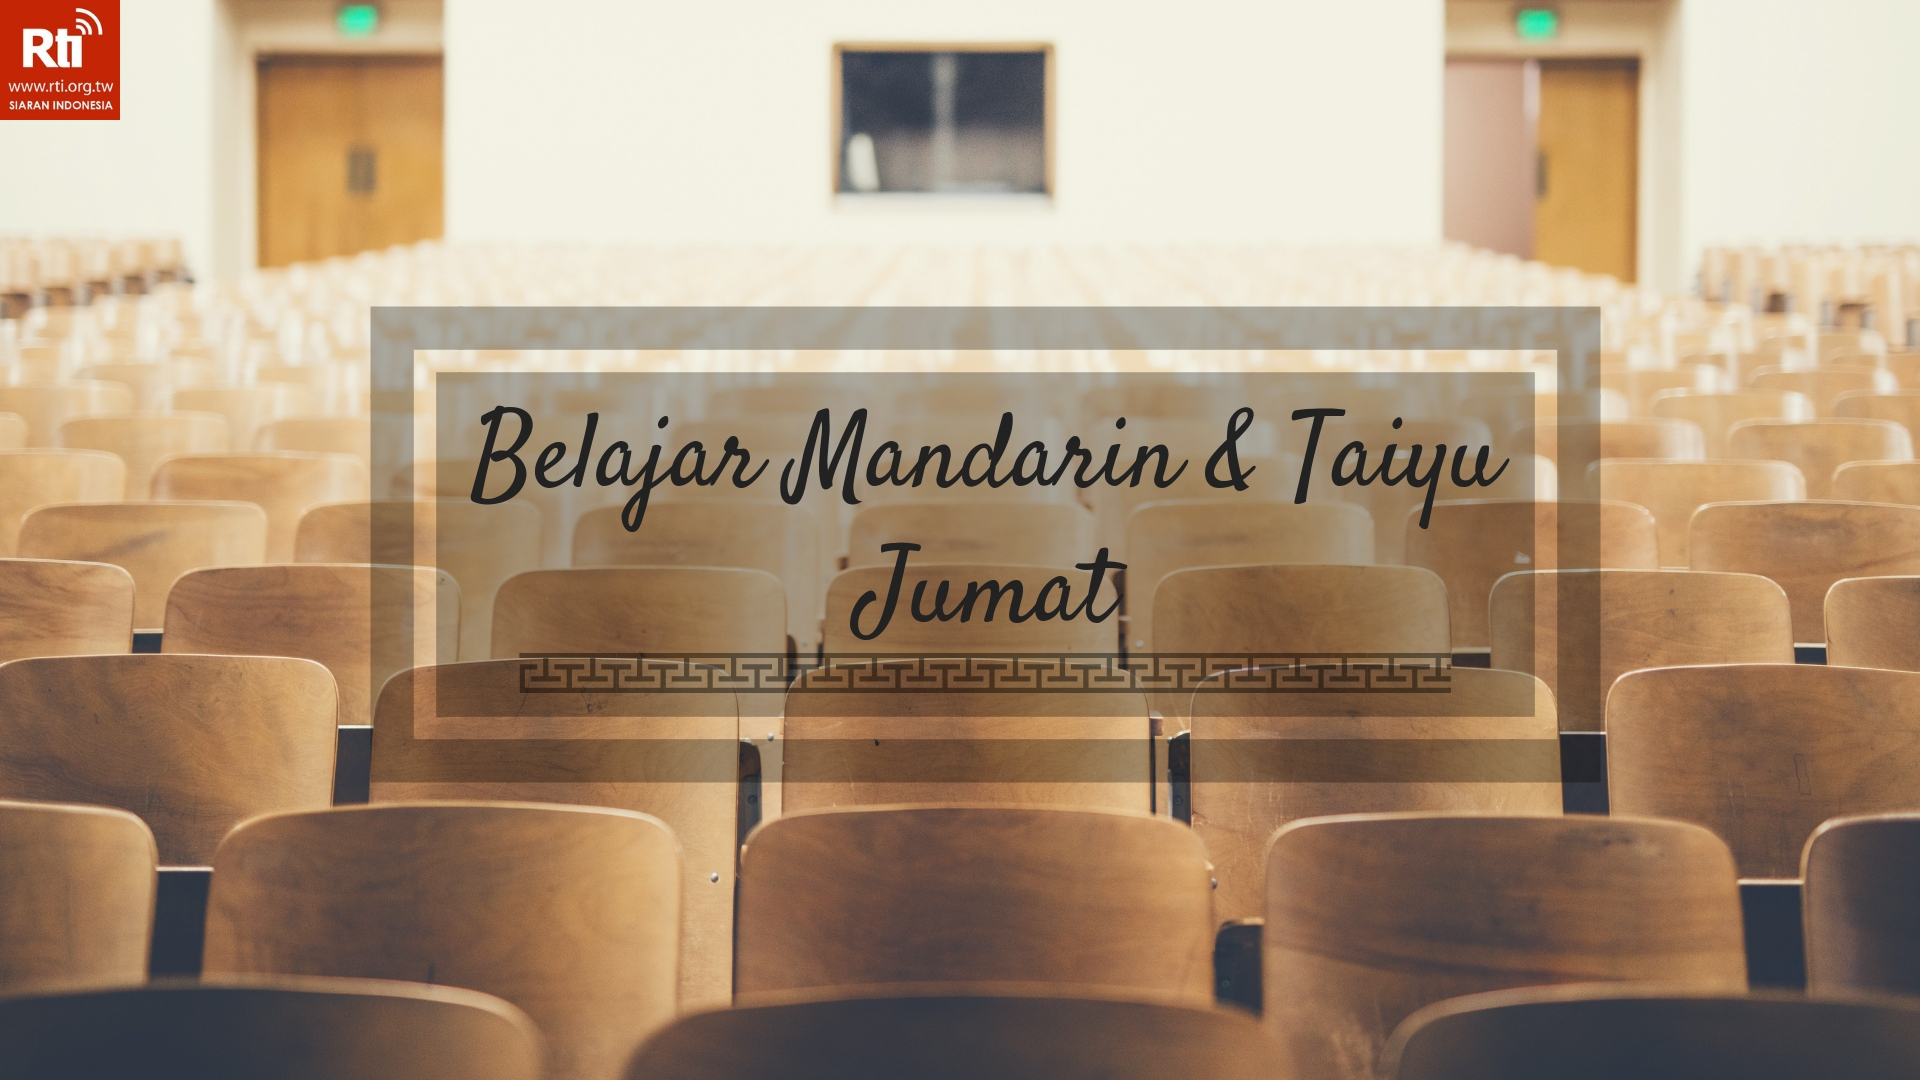 Belajar Mandarin & Taiyu Jumat - 2021-11-26